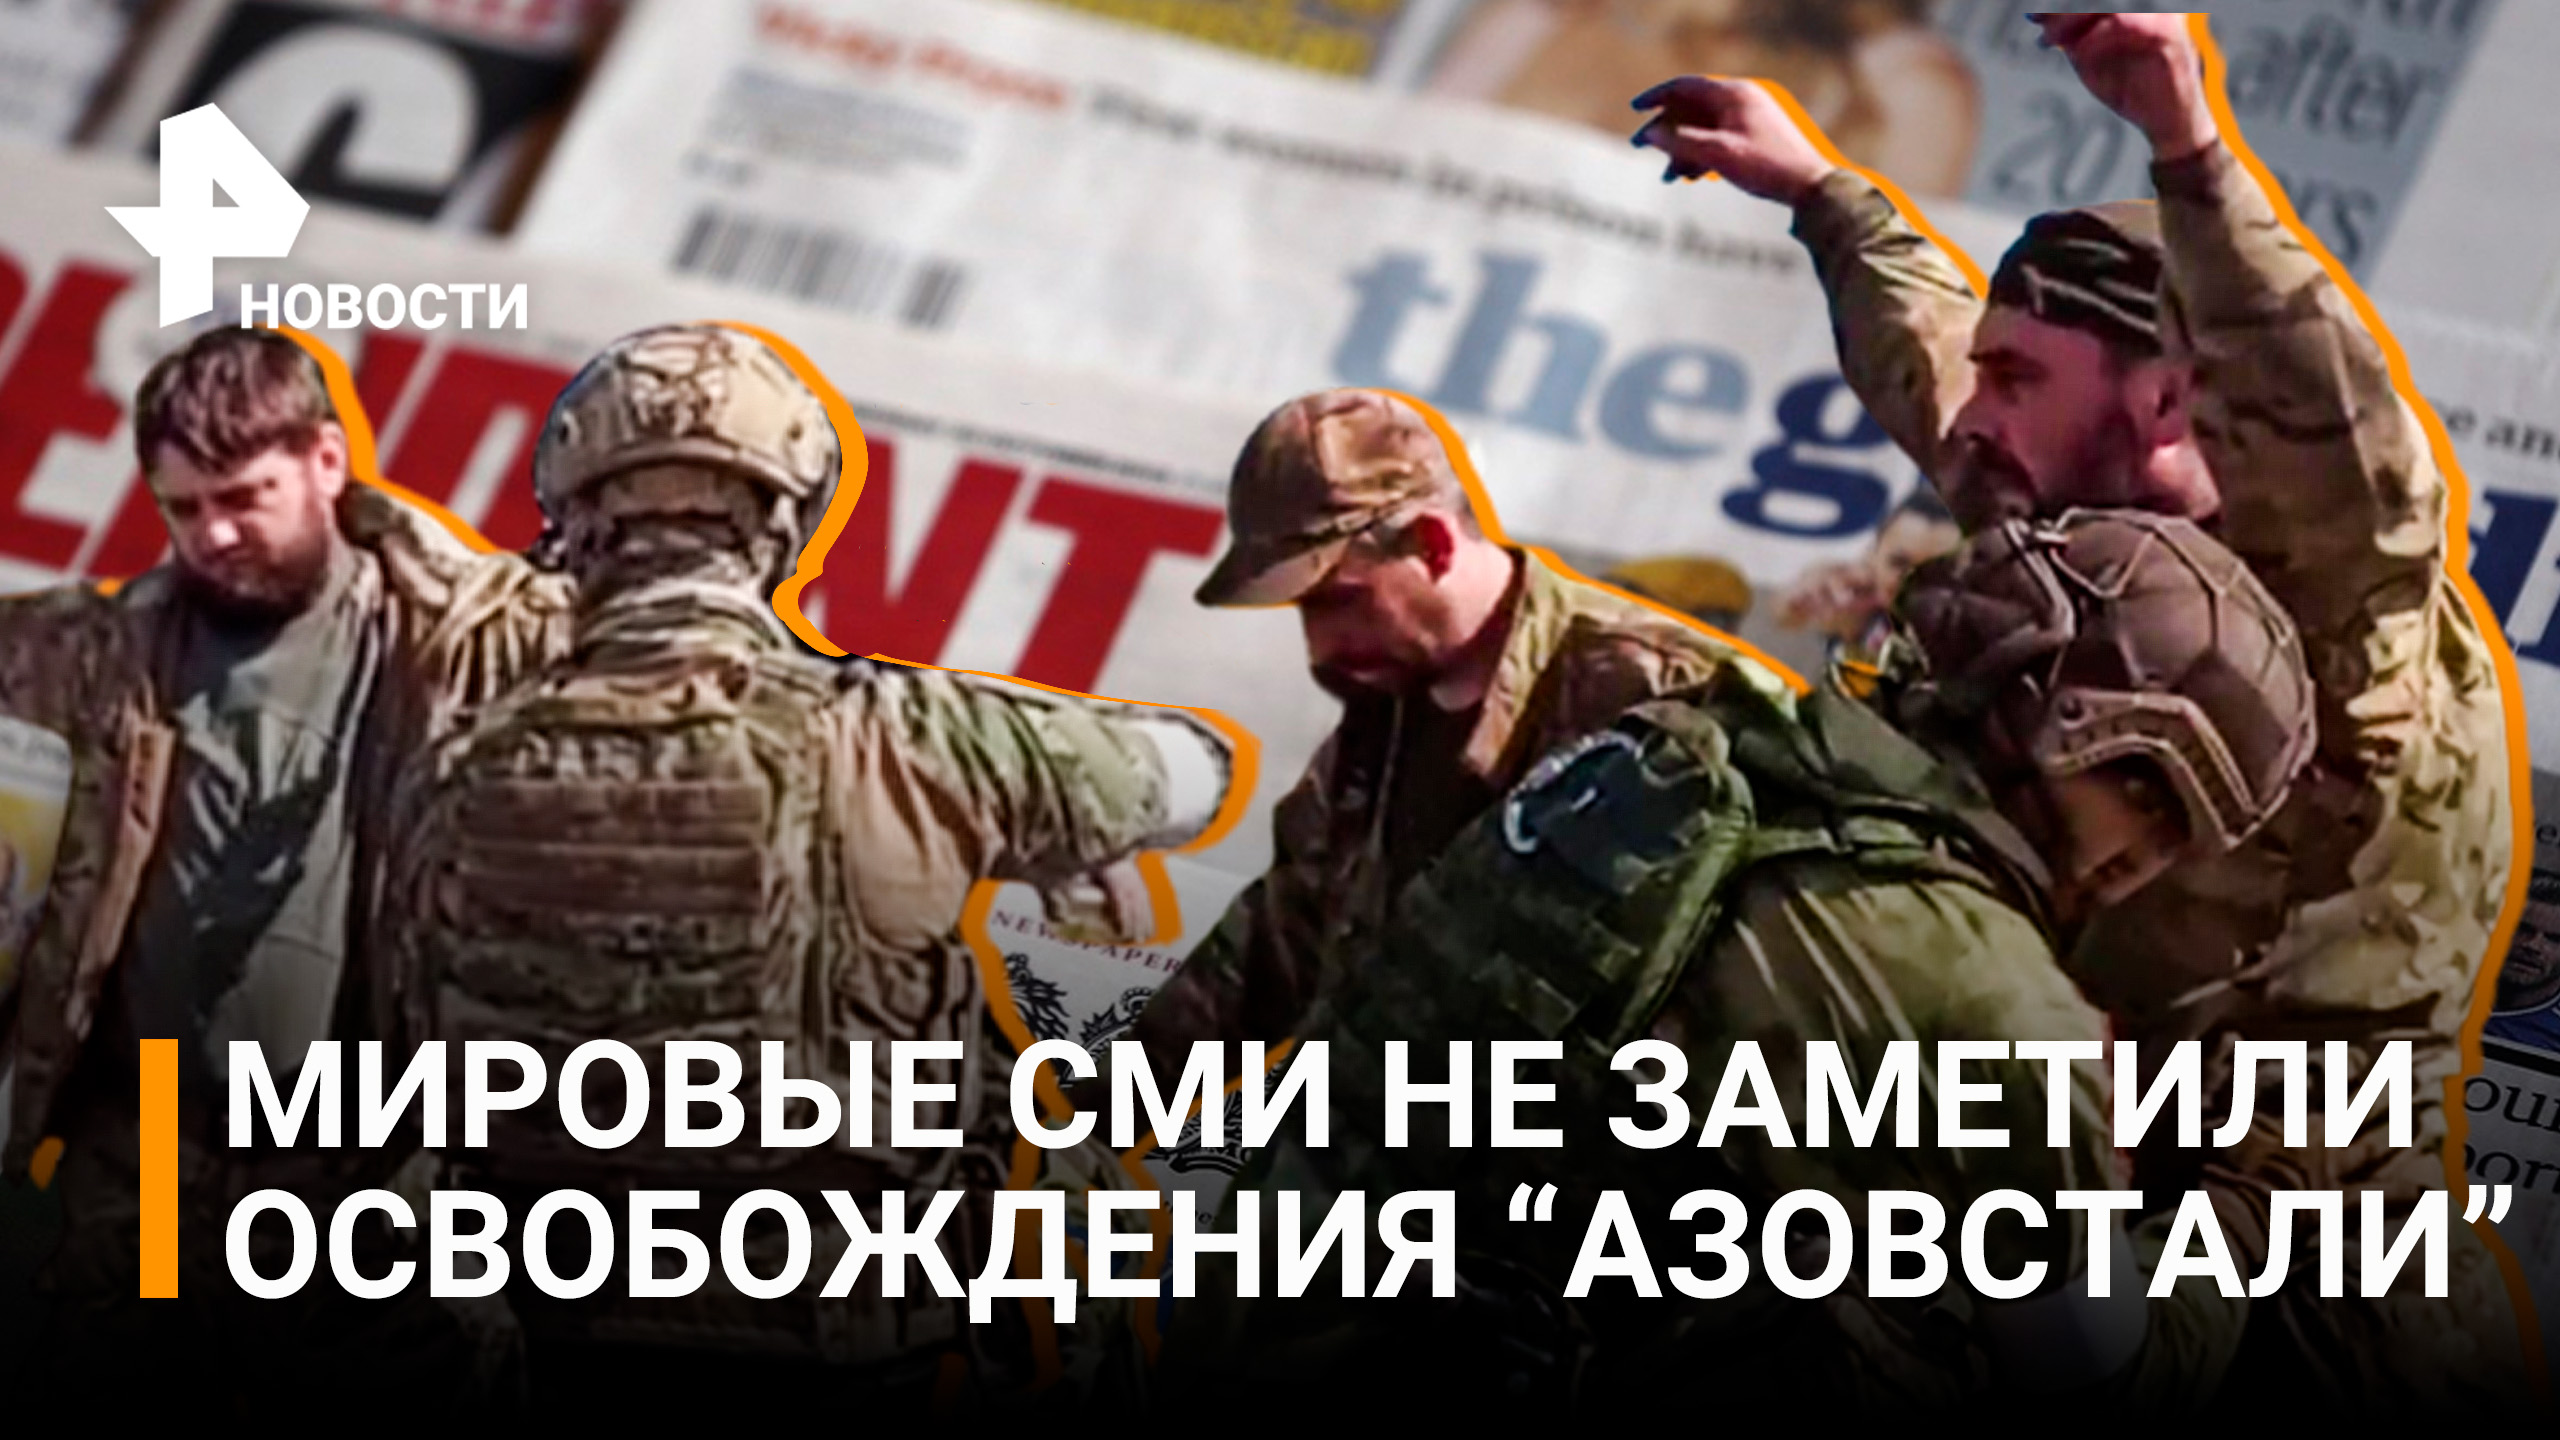 Ведущие мировые СМИ не заметили освобождения "Азовстали" / РЕН Новости